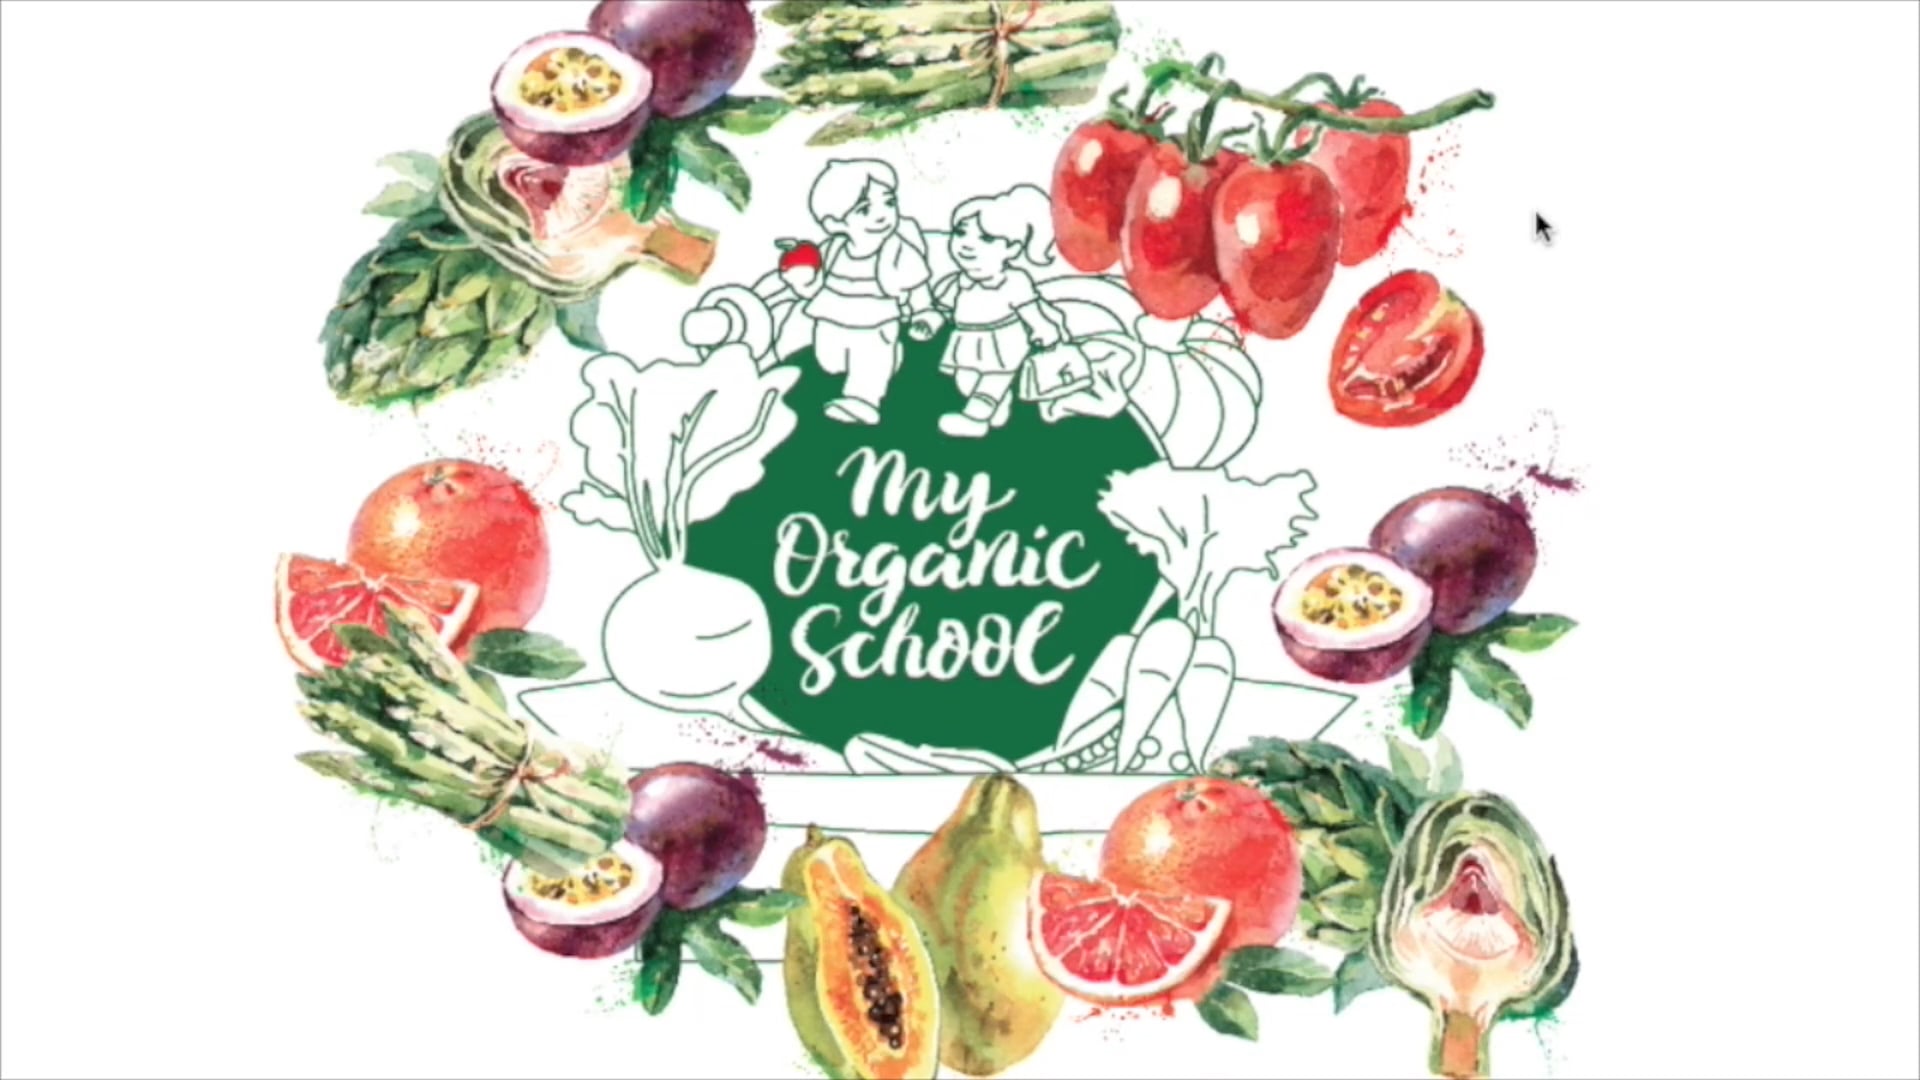 My Organic School Promo Video Jan 2017